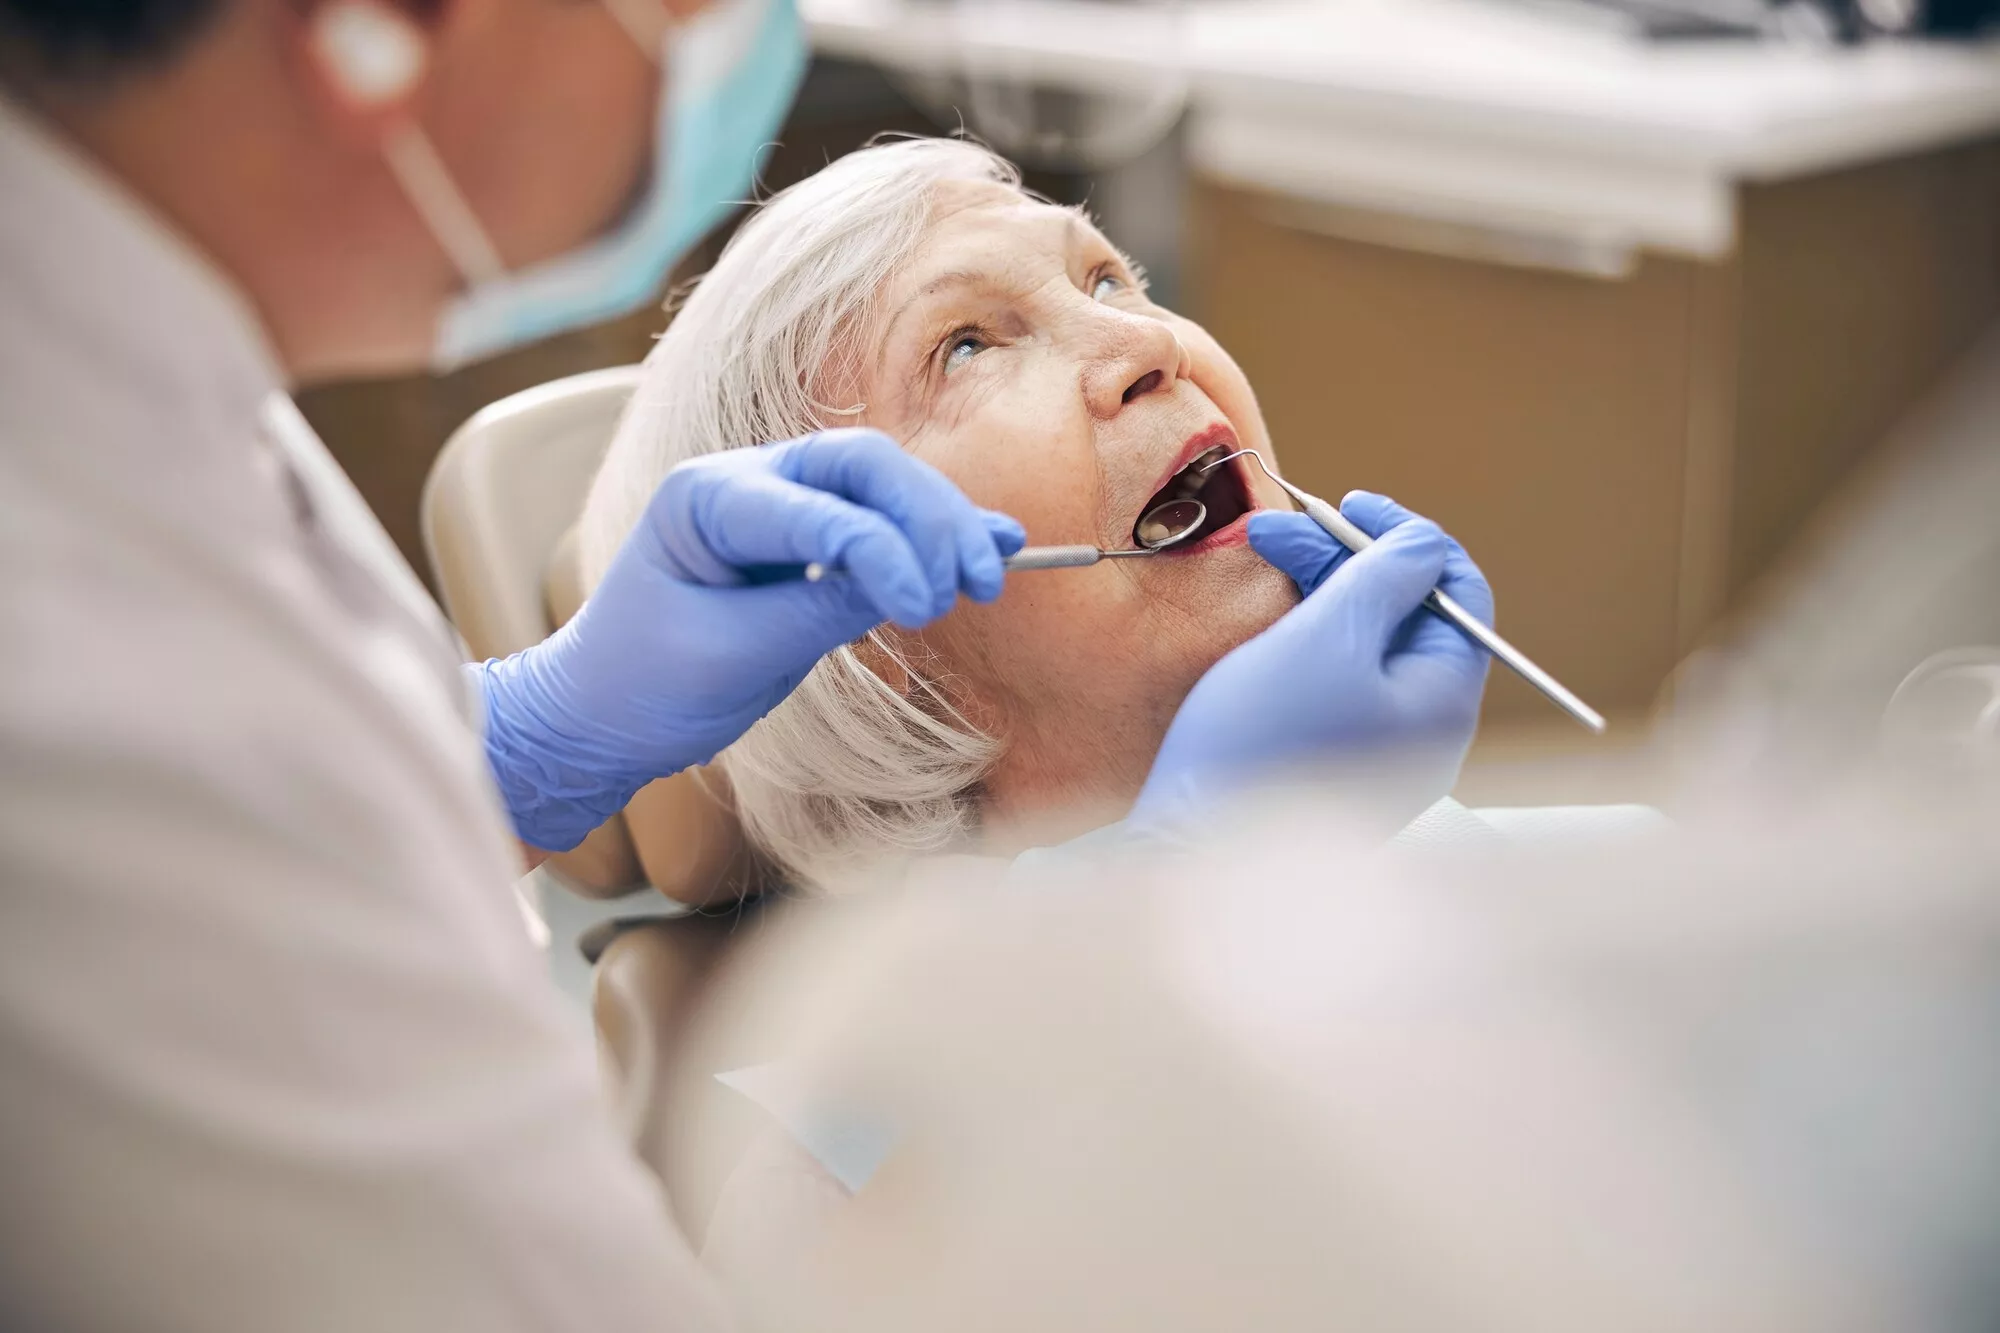 Naisen suuta tutkitaan hammaslääkärissä.